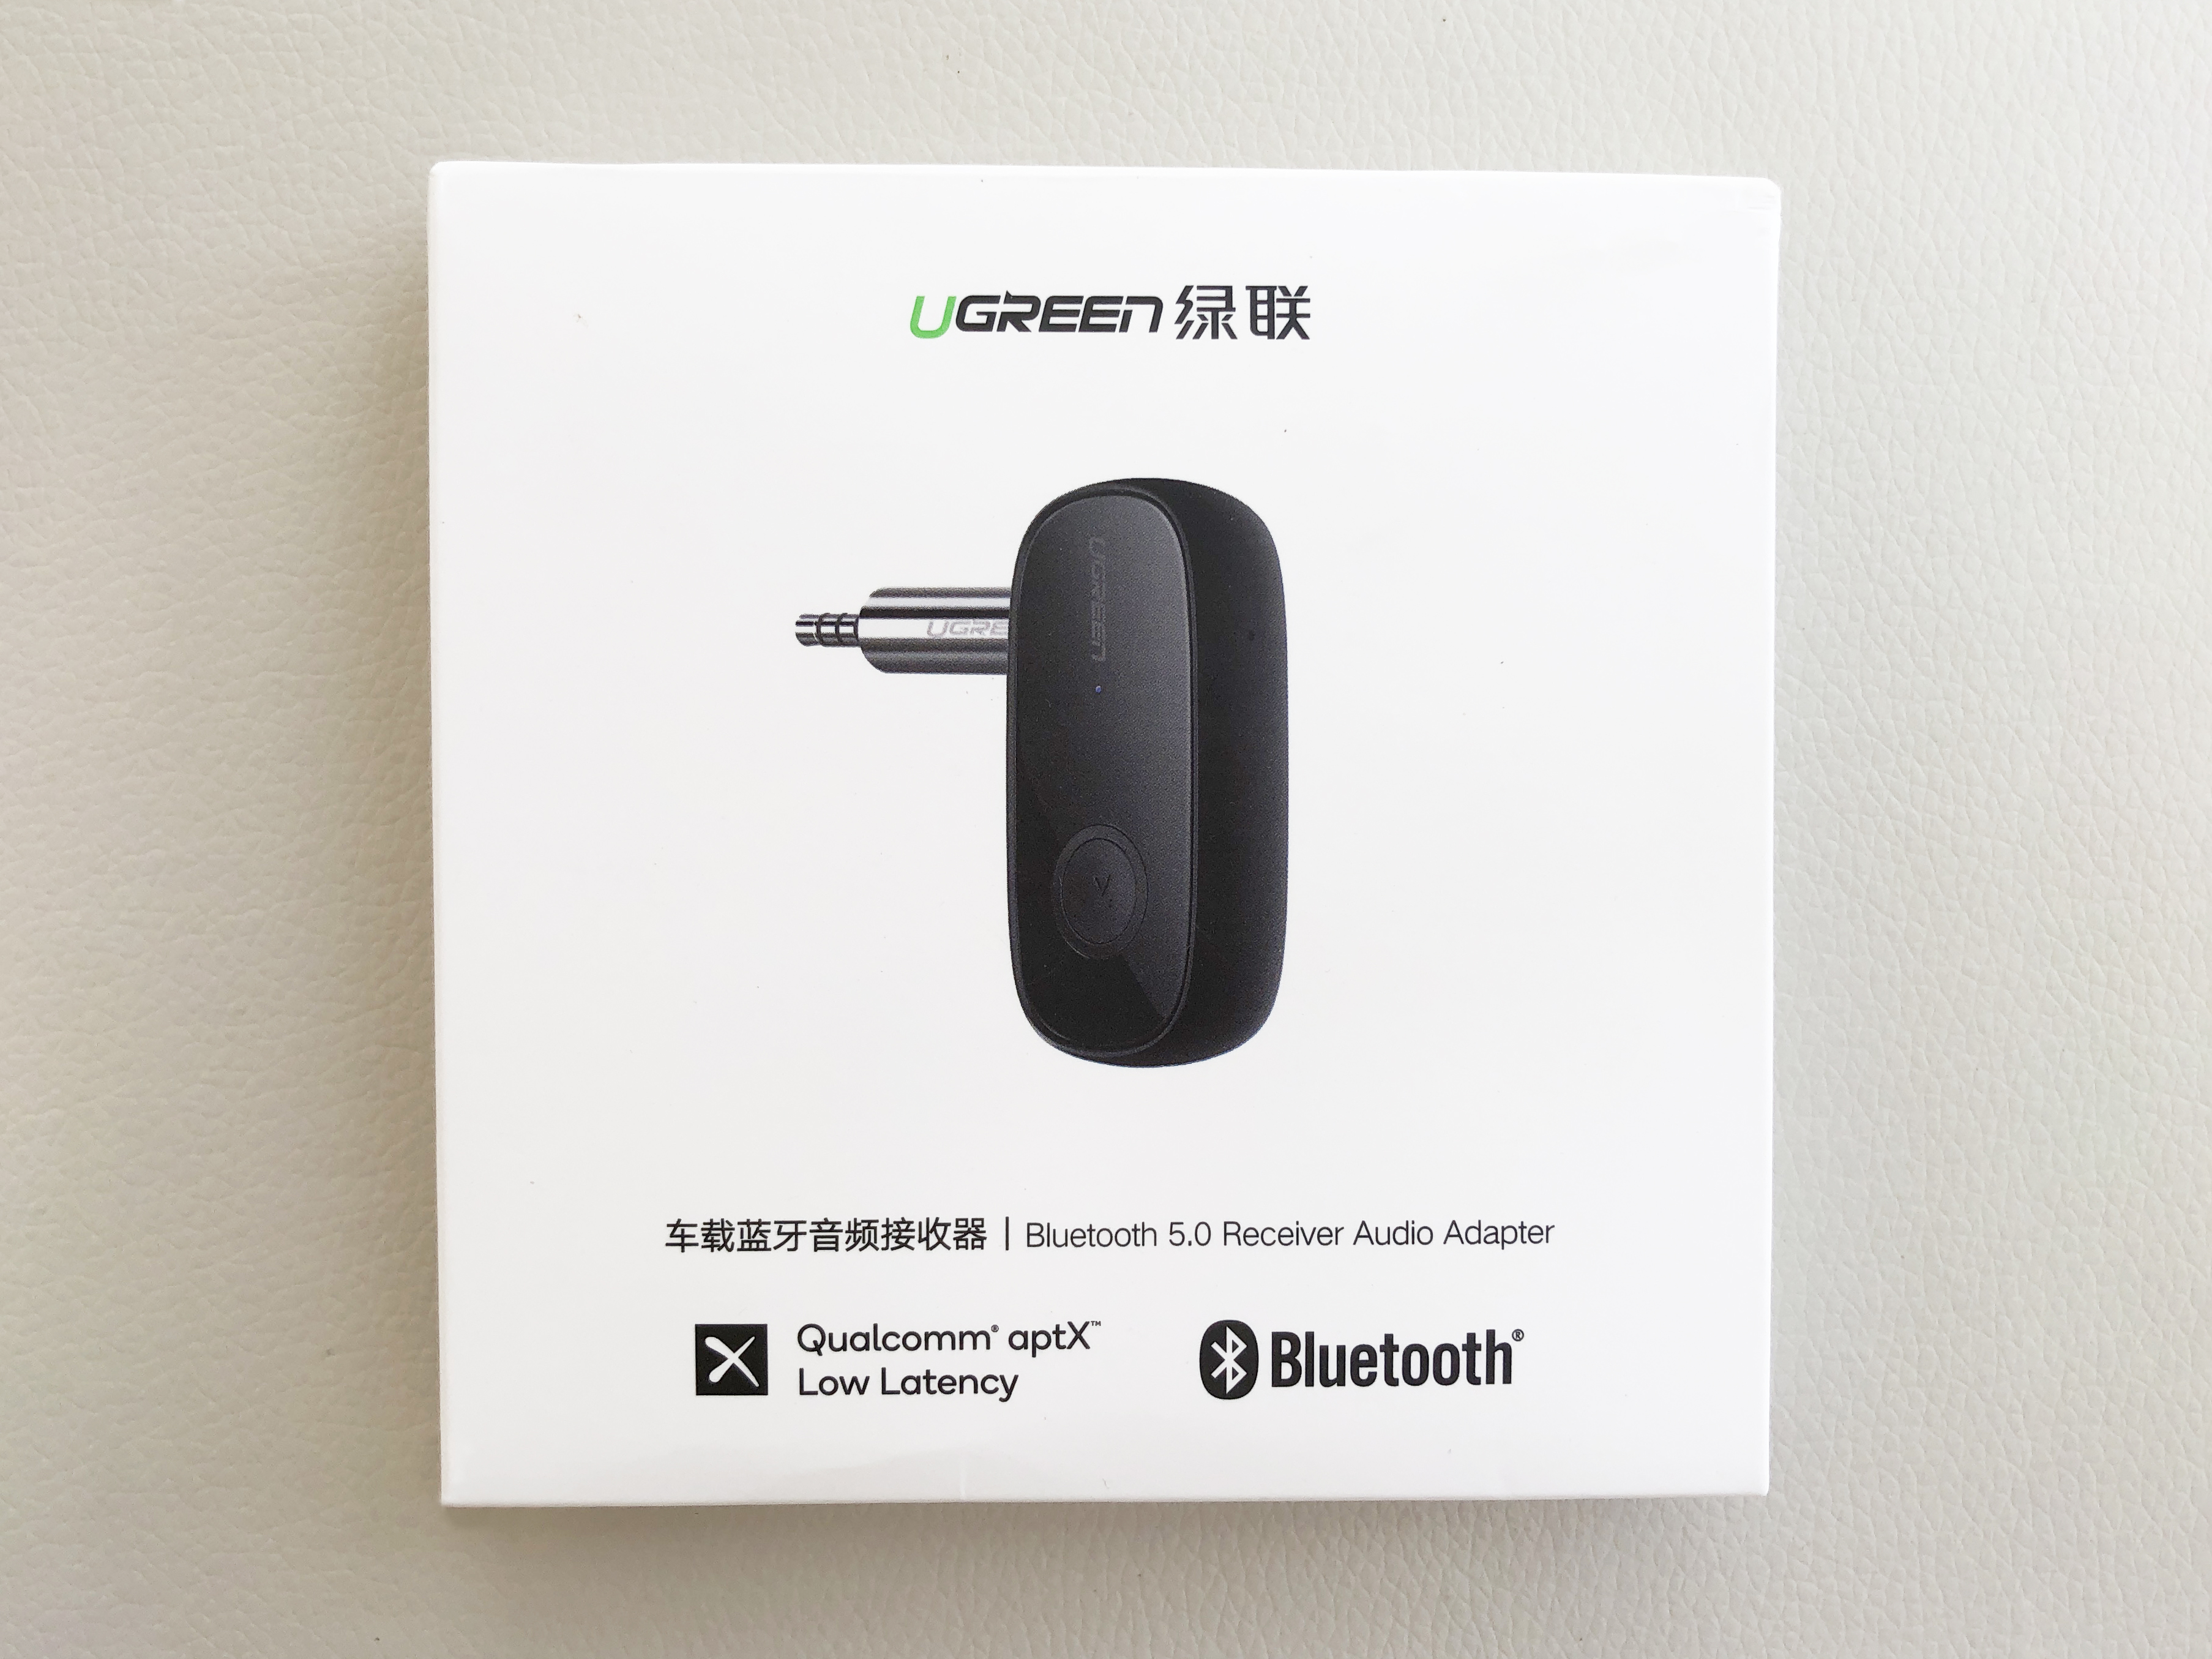  Thiết bị nhận Bluetooth 5.0 cho Loa trên xe hơi Cao cấp Ugreen 70304